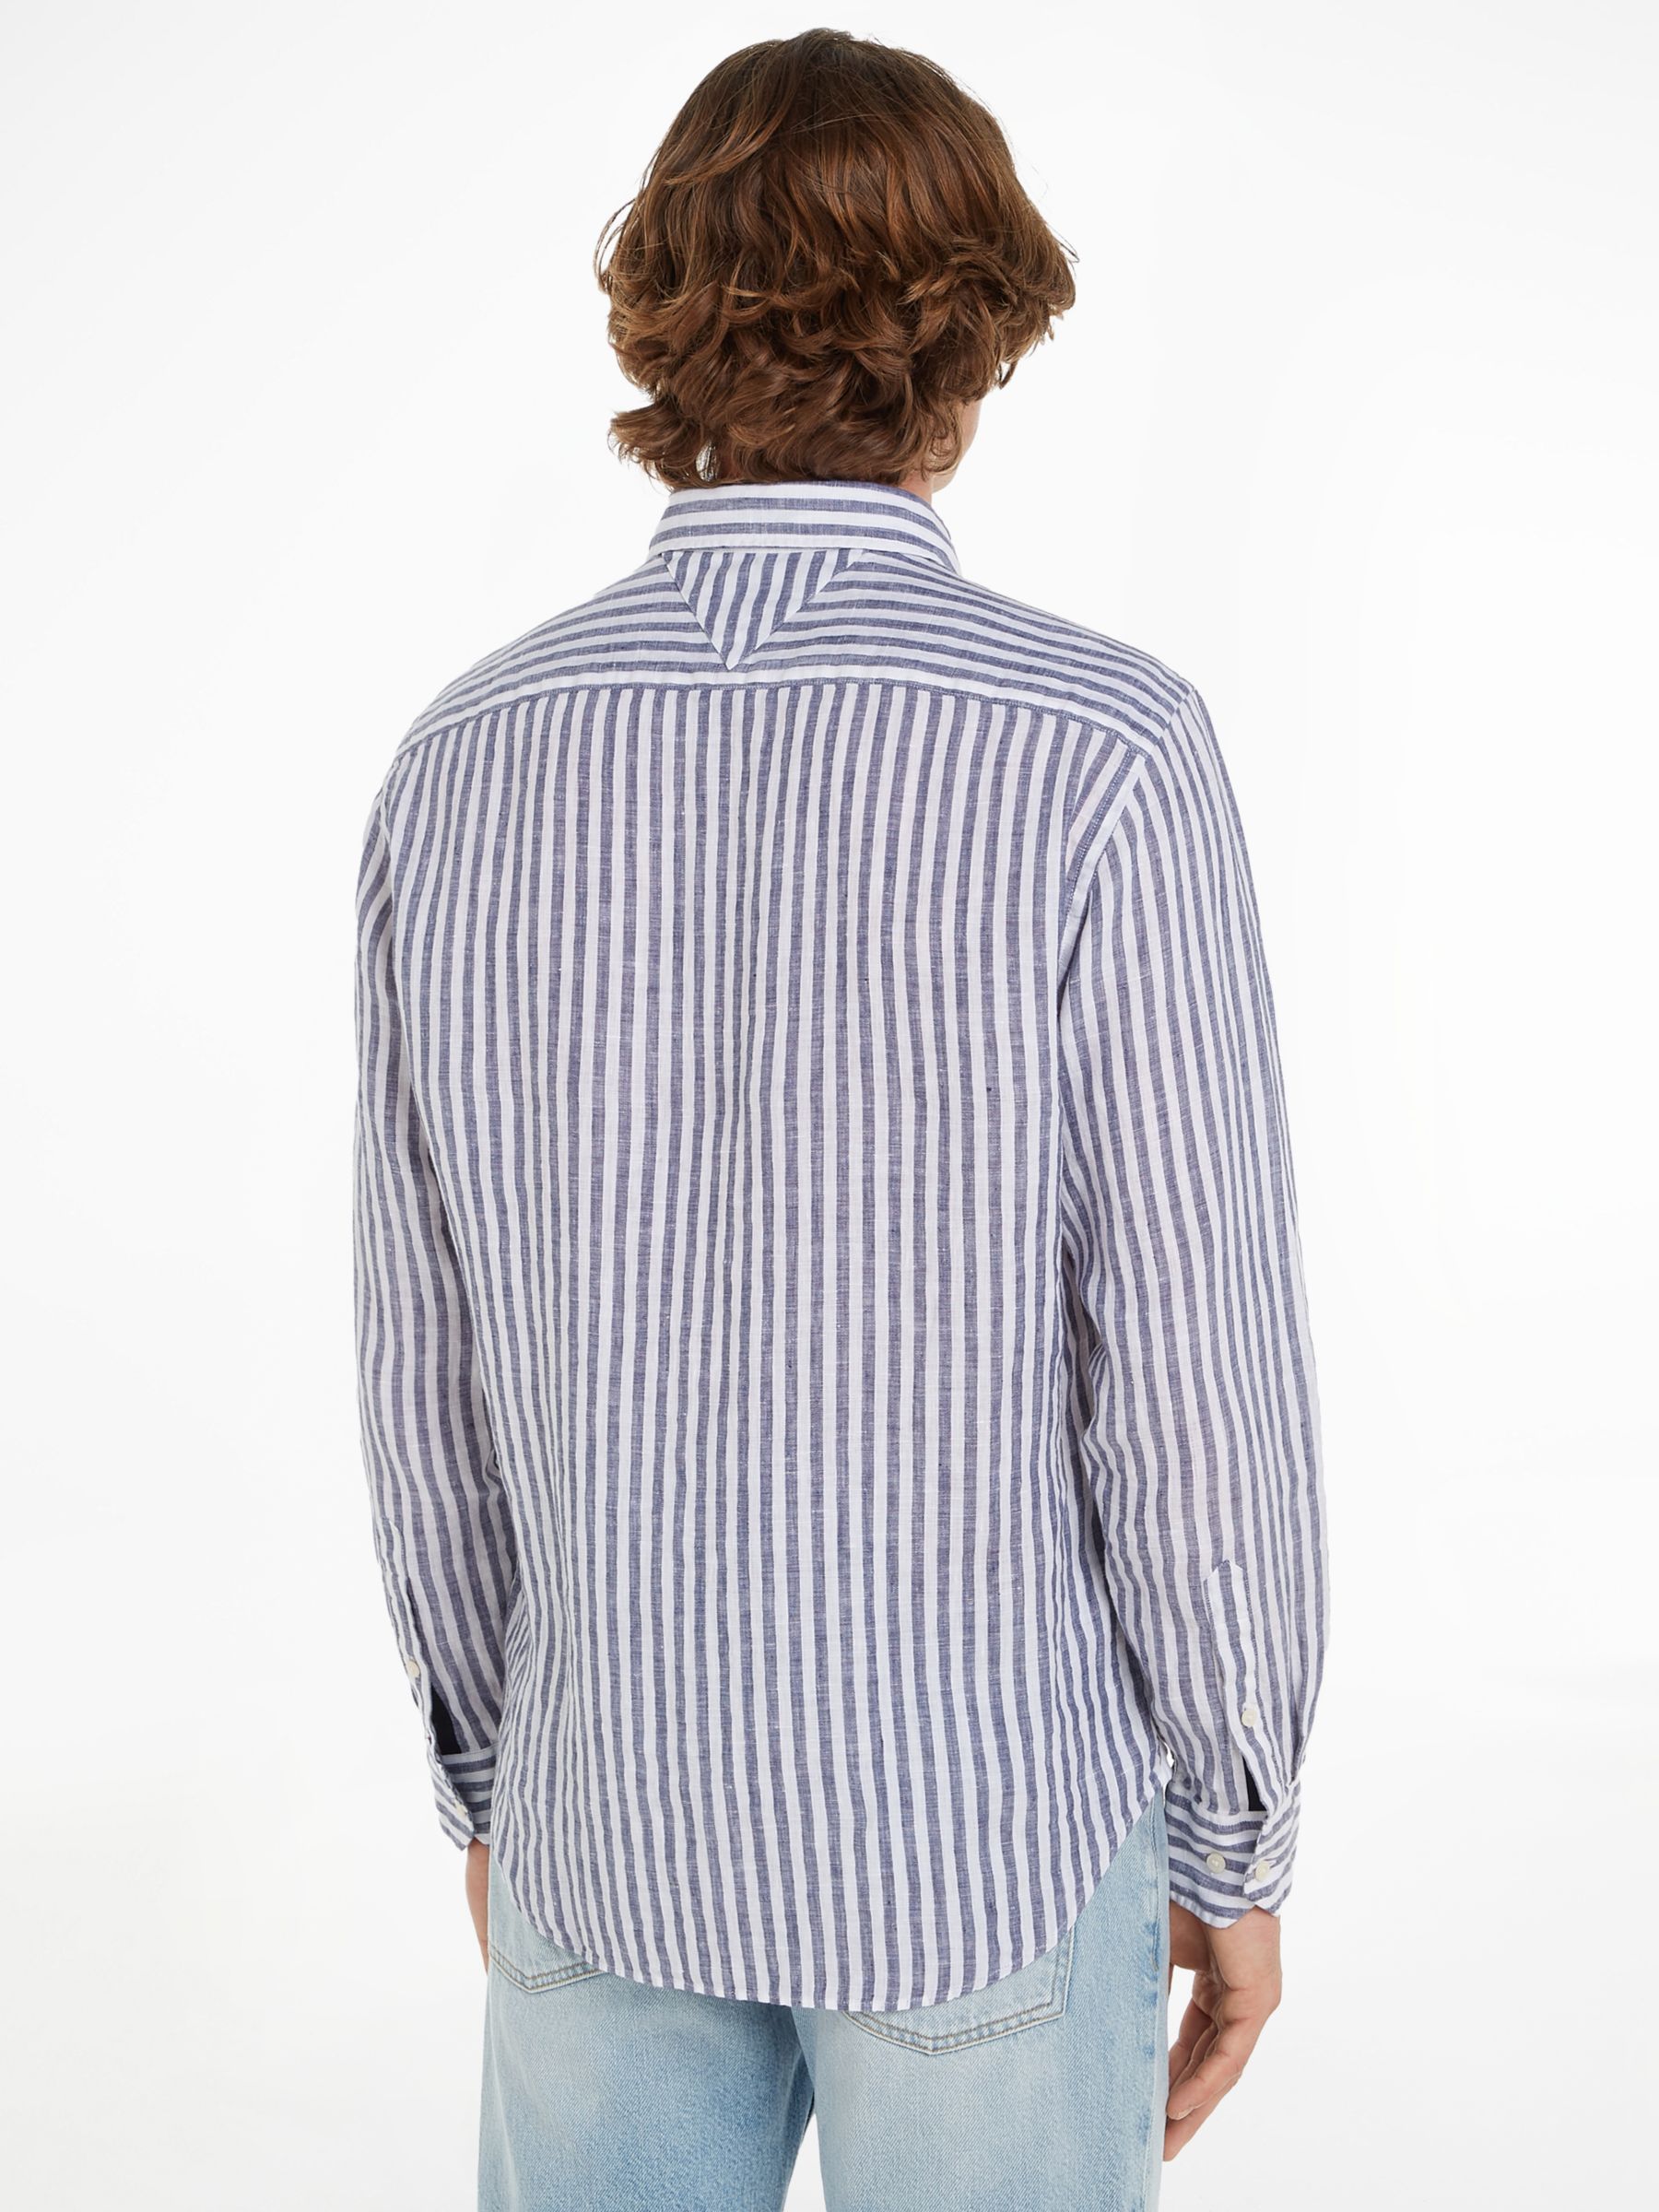 Tommy Hilfiger Linen Stripe Shirt, Dark Navy/White, XS